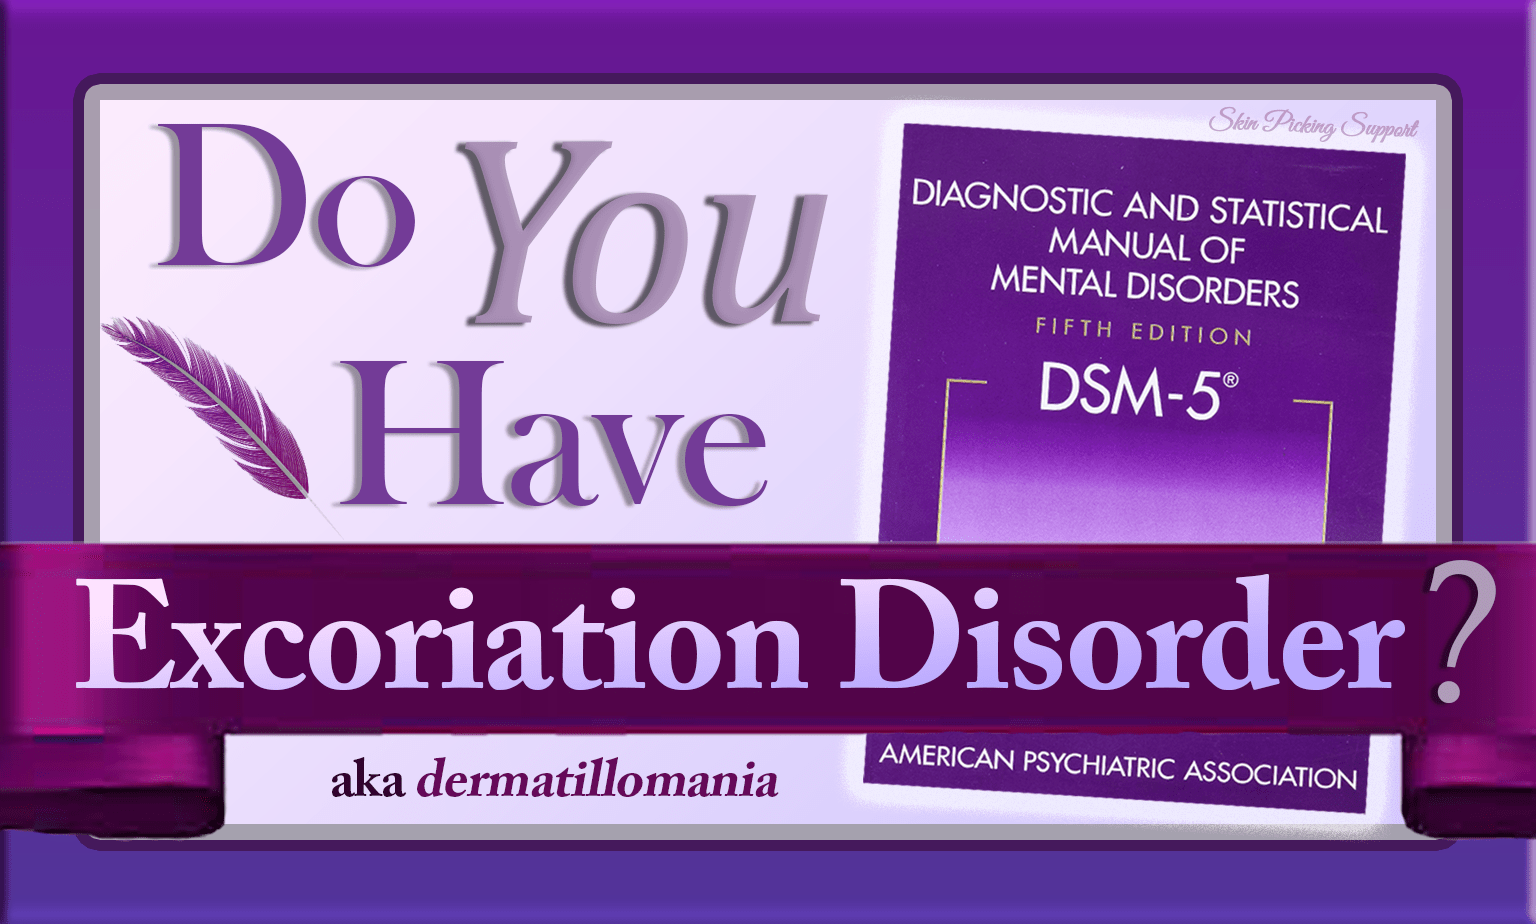 Do You Have Dermatillomania?